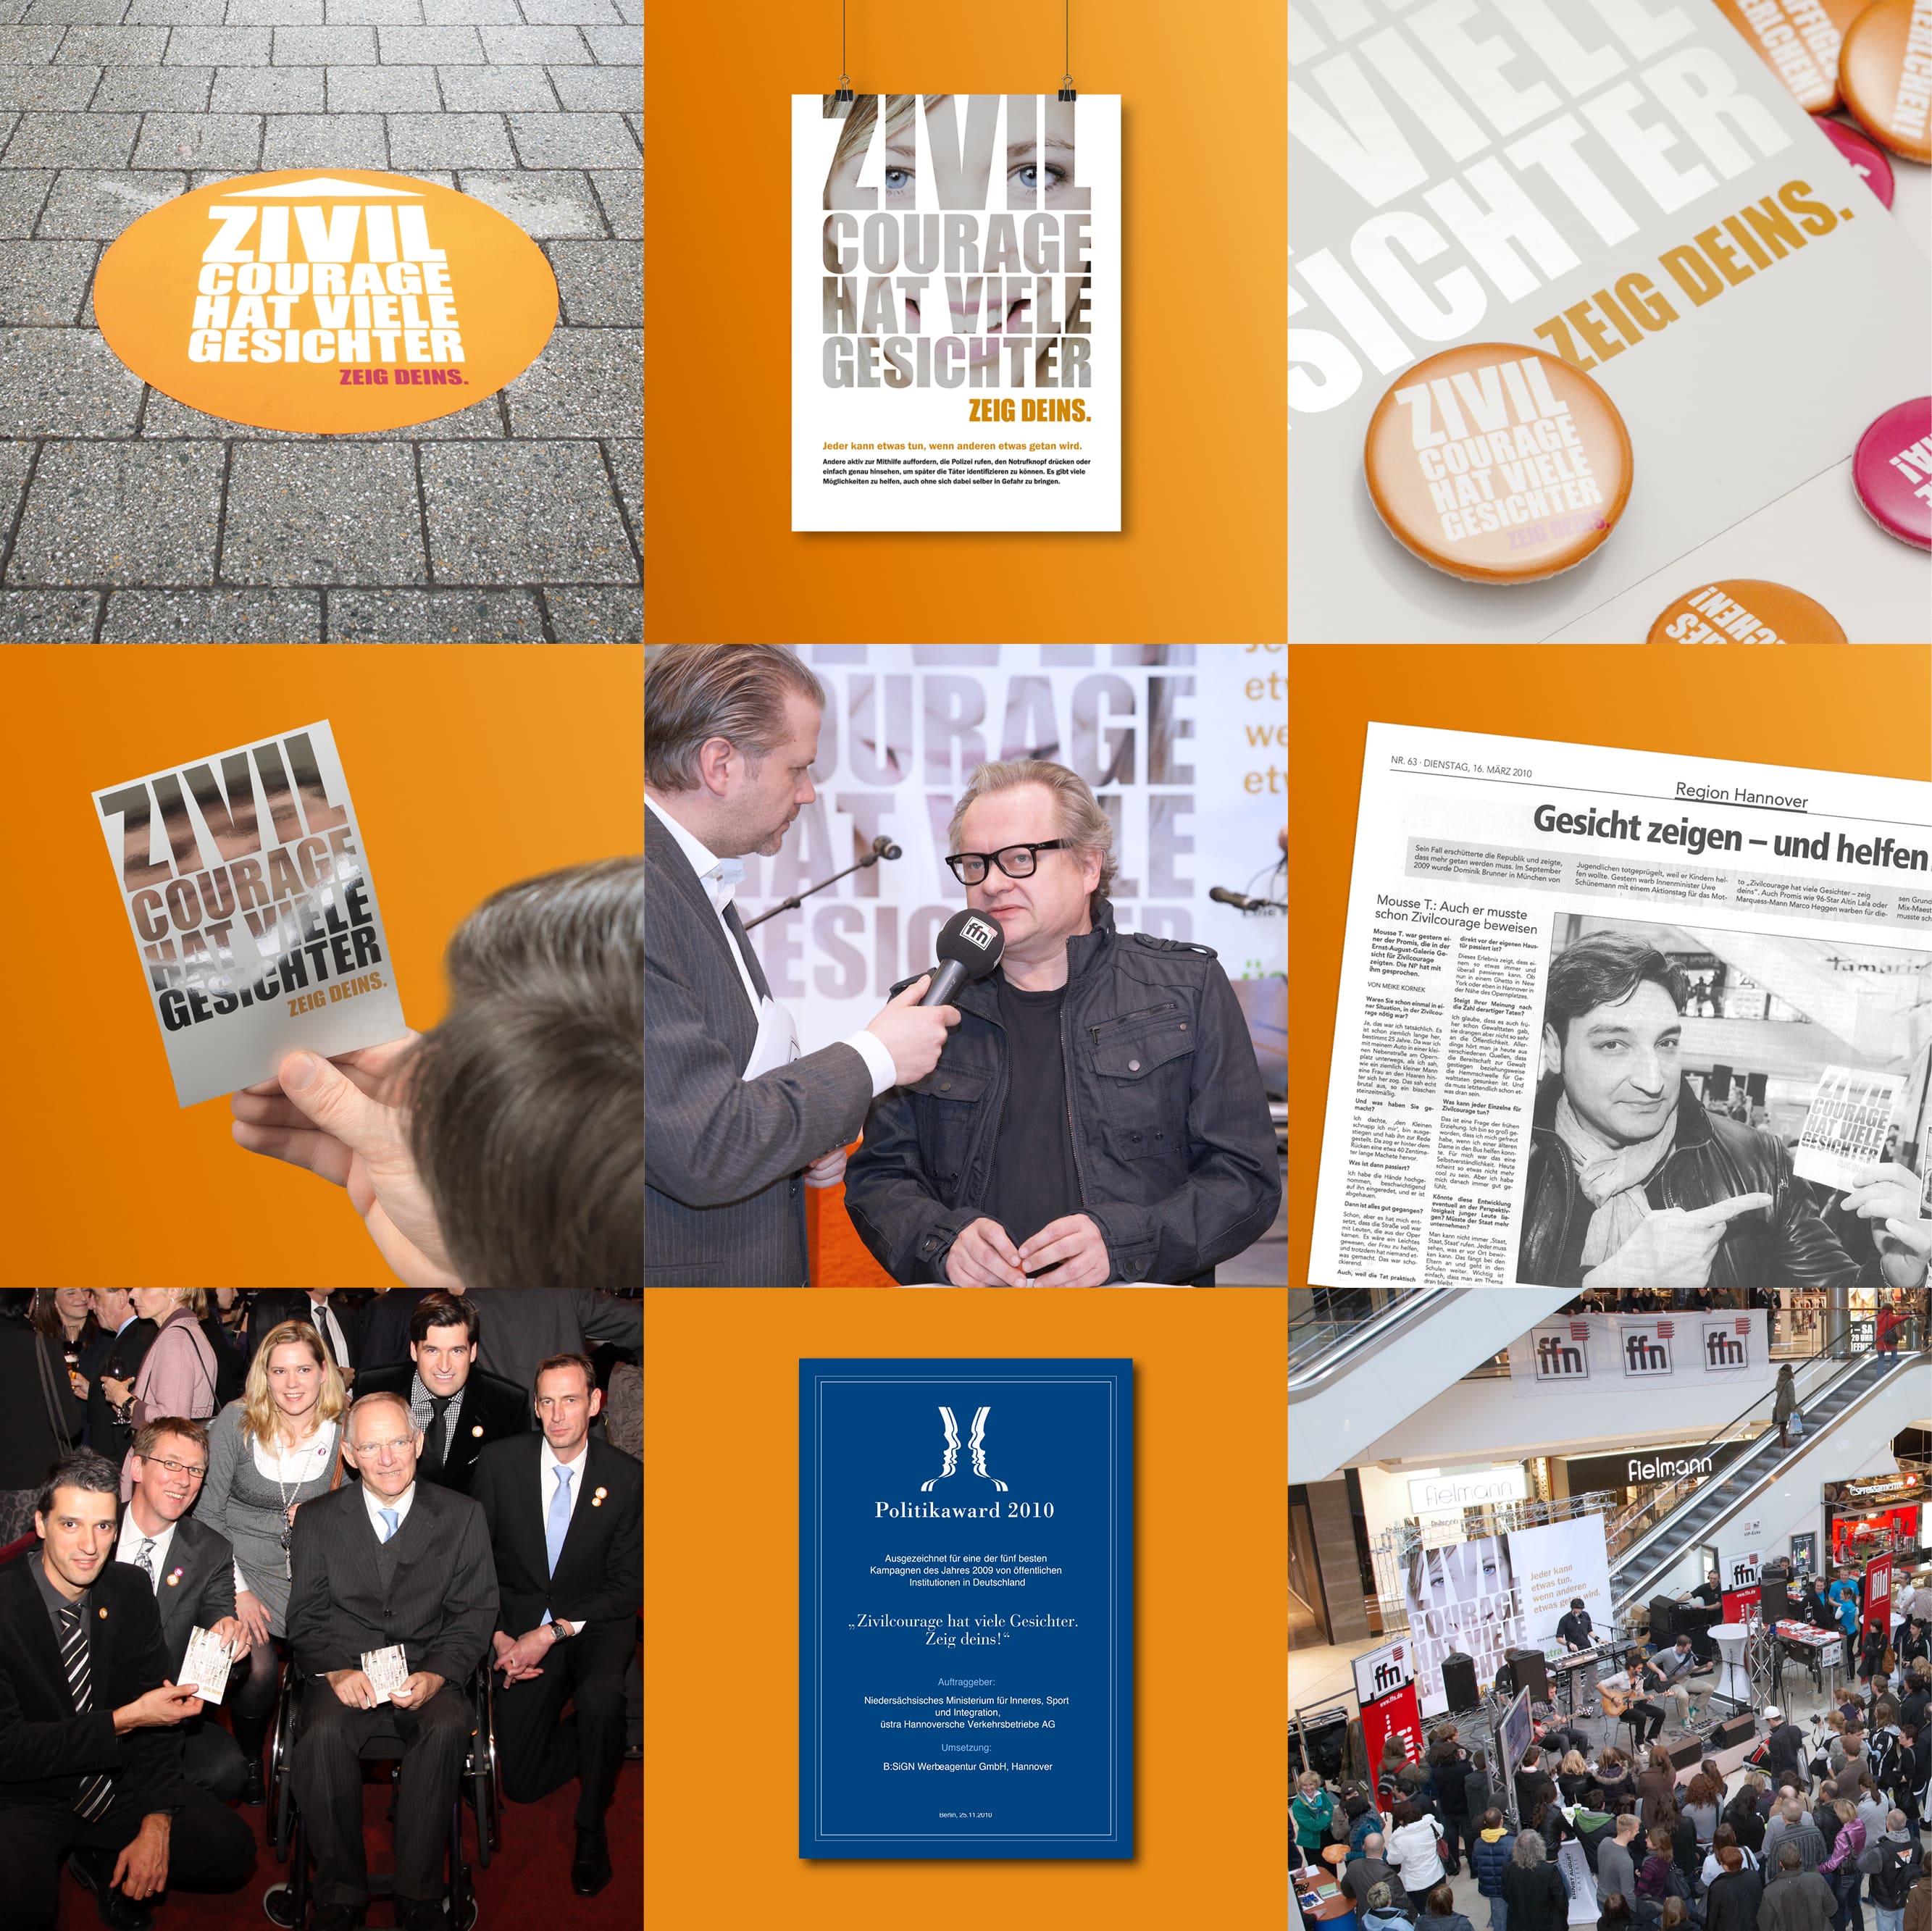 Mehrere Bilder zur Kampagne zum Thema Zivilcourage. Prominente wie zum Beispiel Wolfgang Schäuble haben die Kampagne unterstützt.